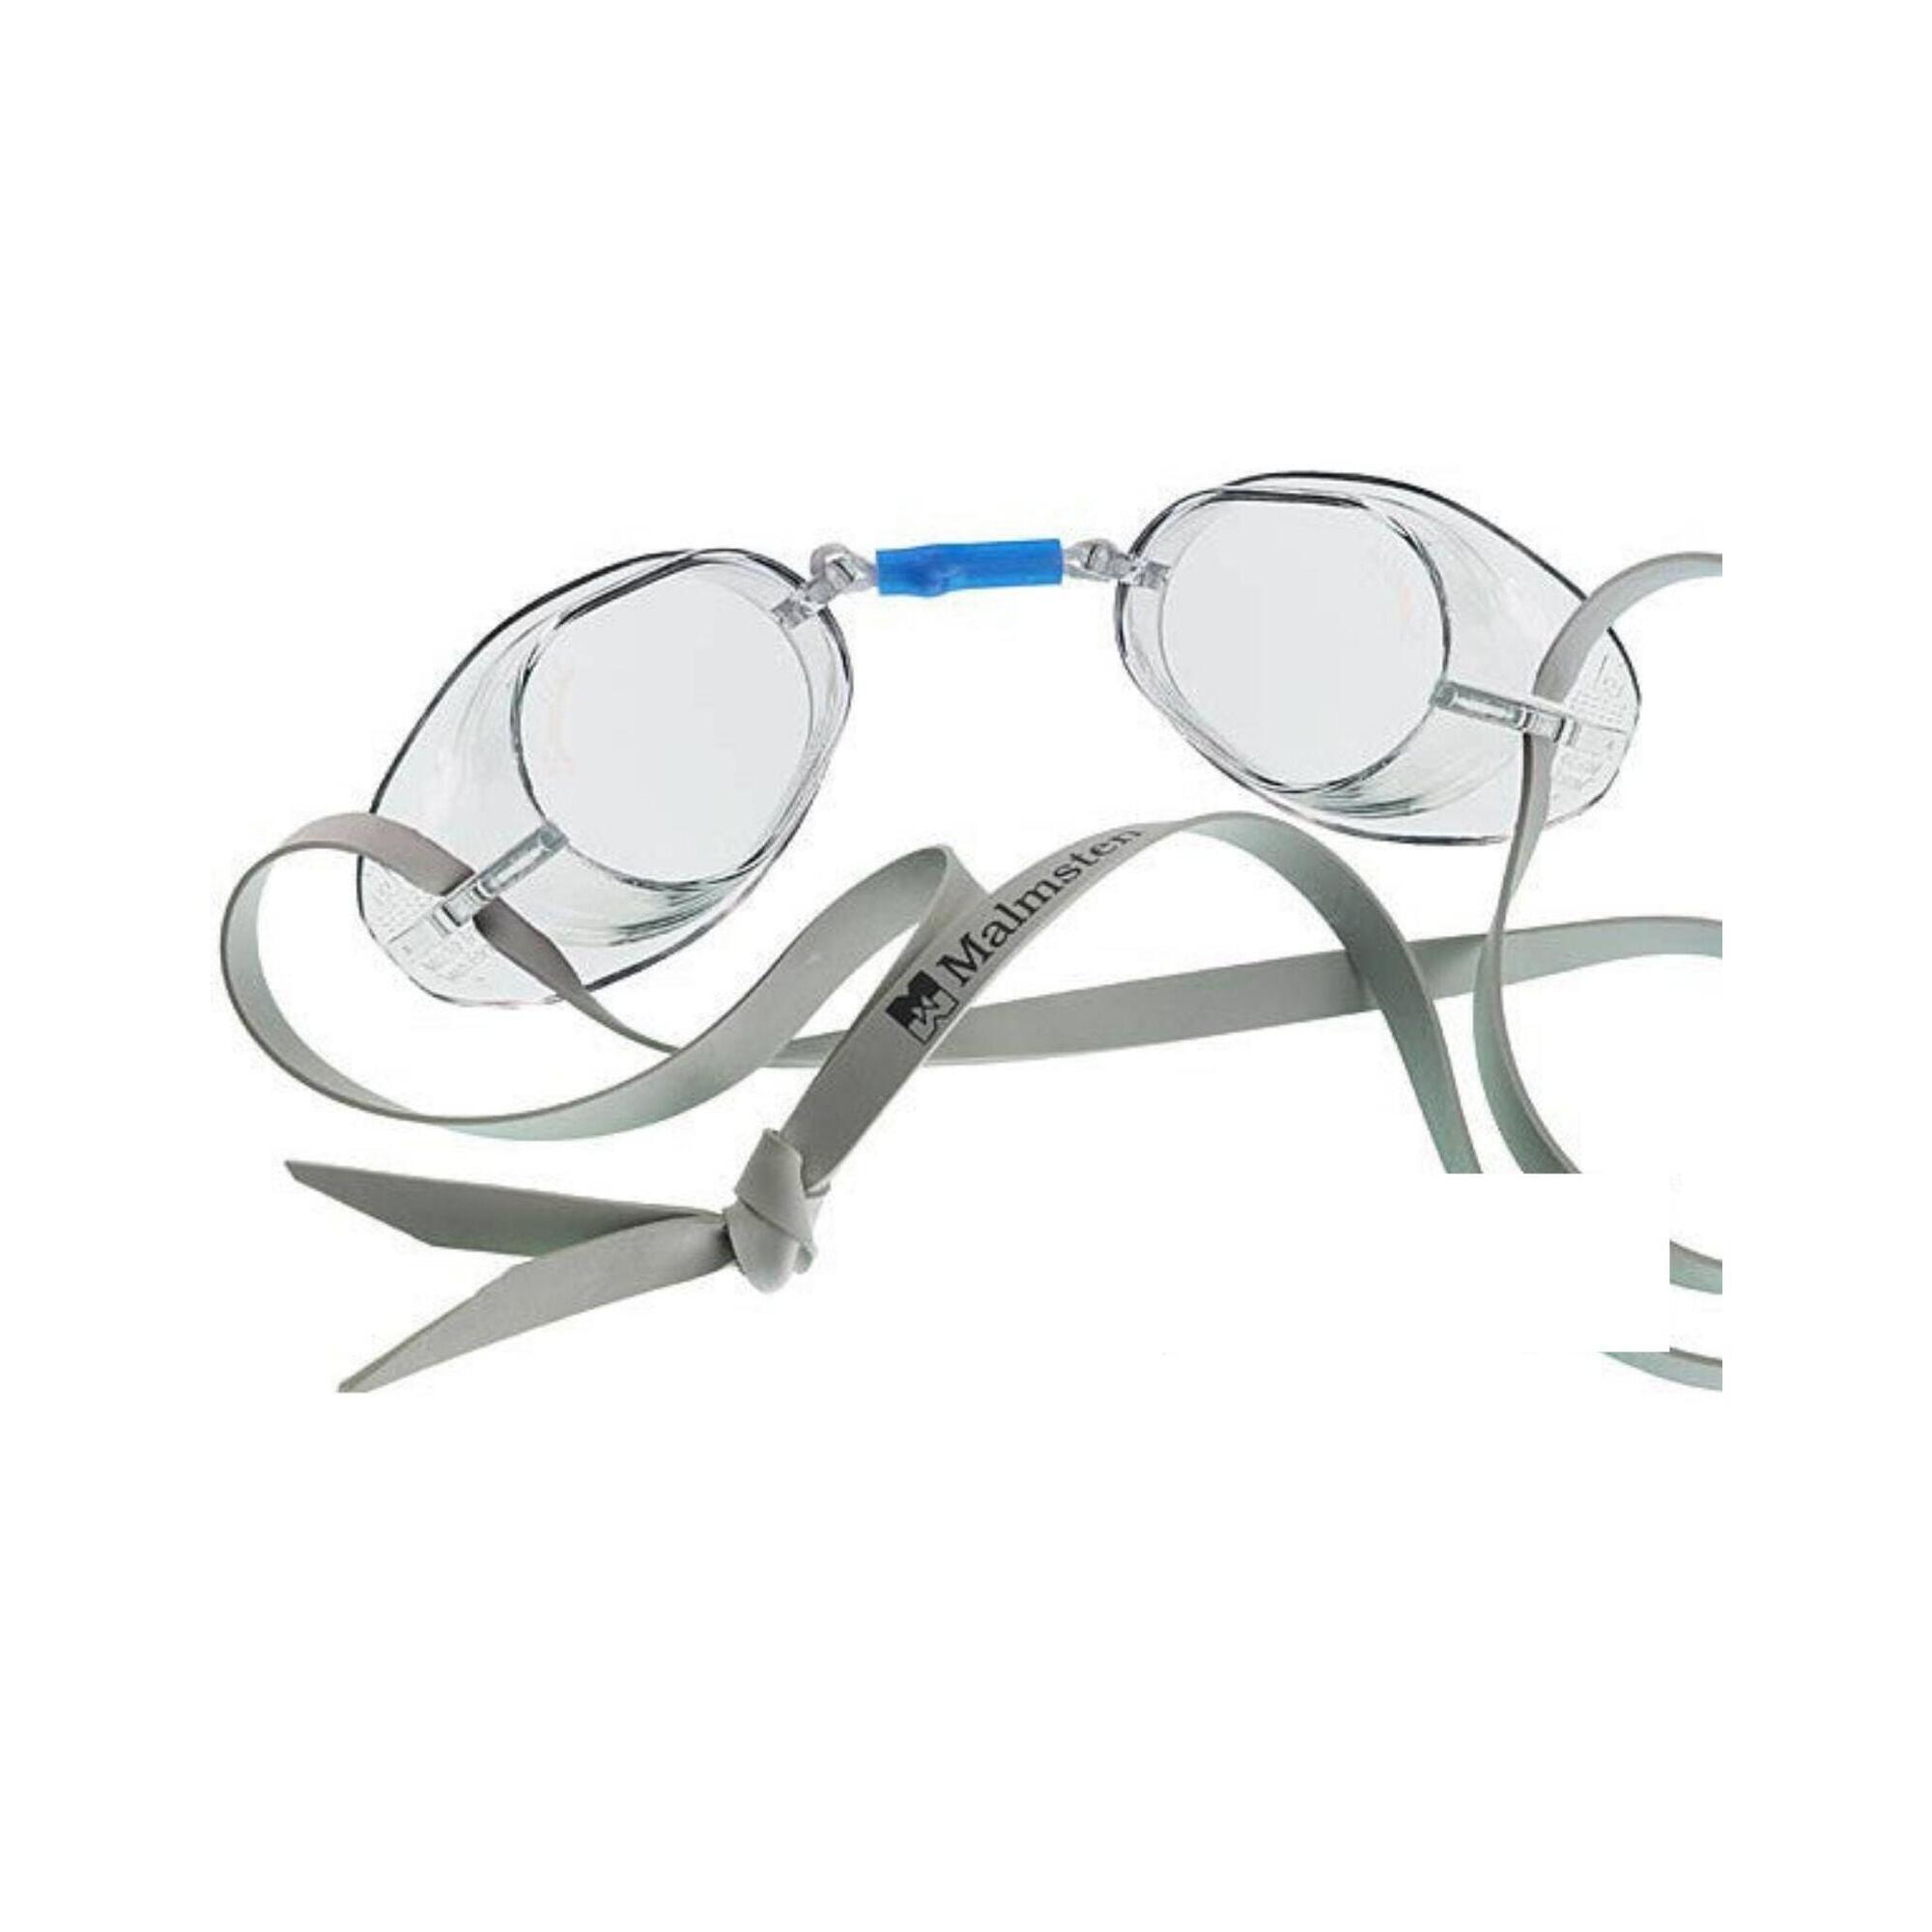 Malmsten Swedish Competition Swim Goggles - Clear 1/3